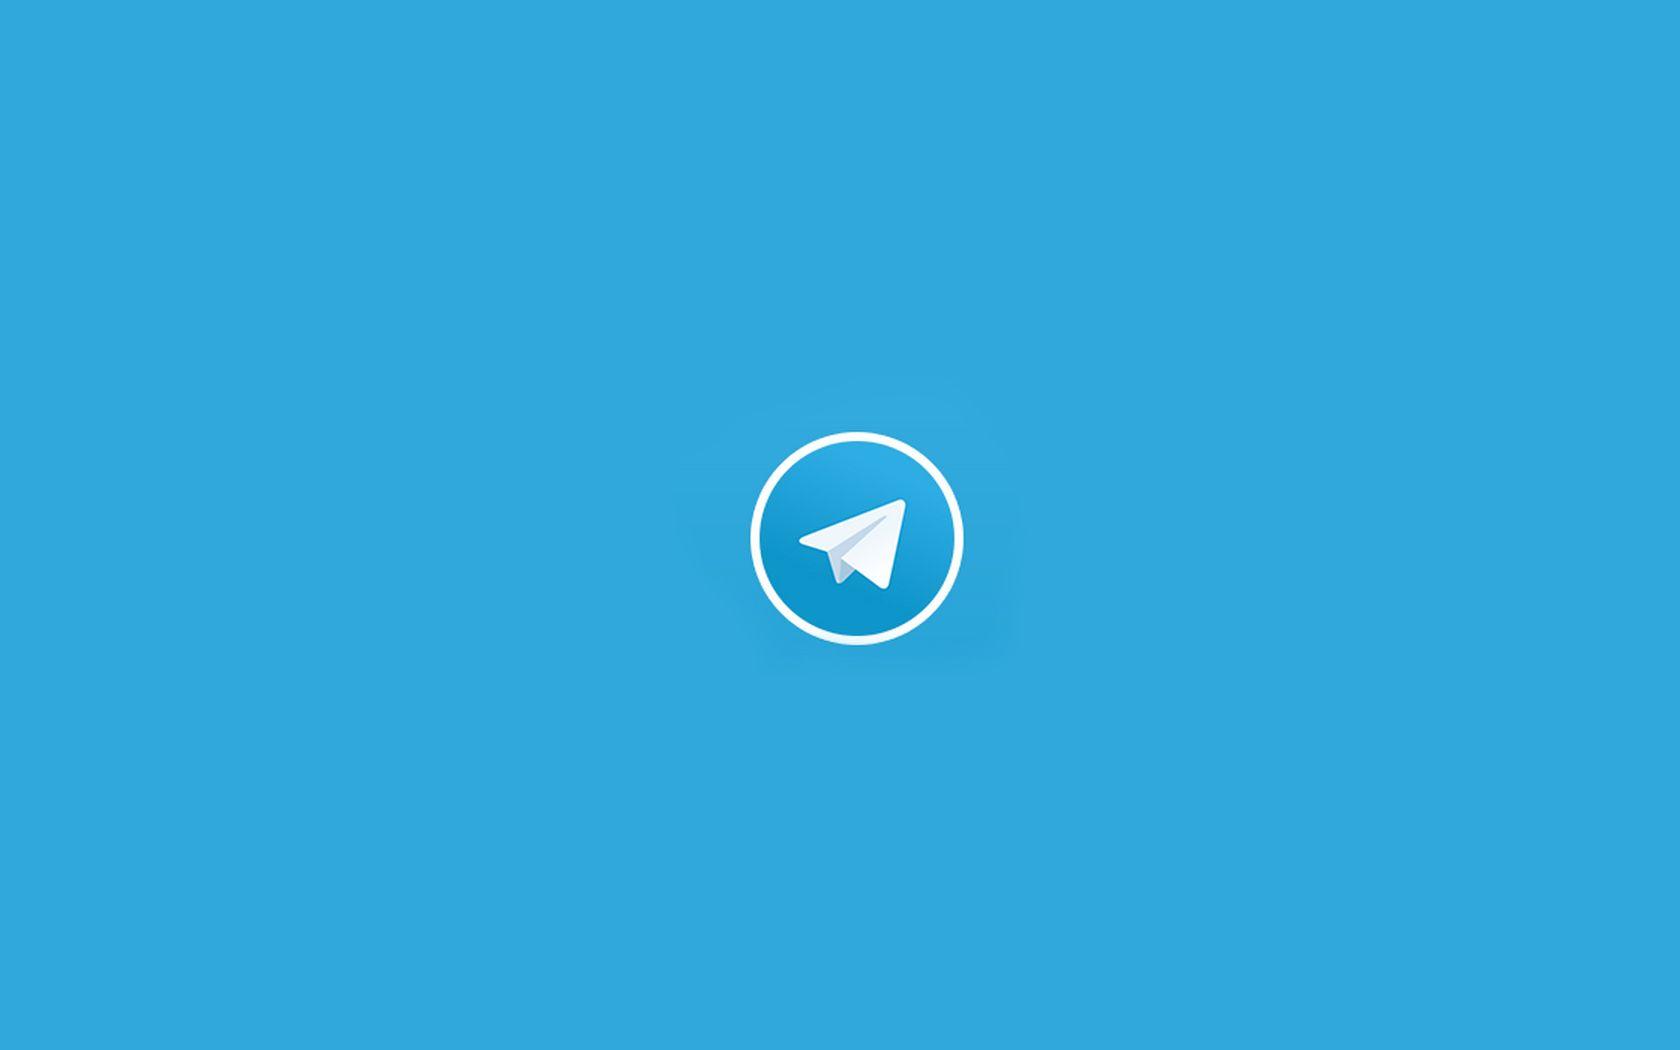 Messenger App Logo - Telegram Messenger App Design | :: D E S I G N :: Inspiration | App ...